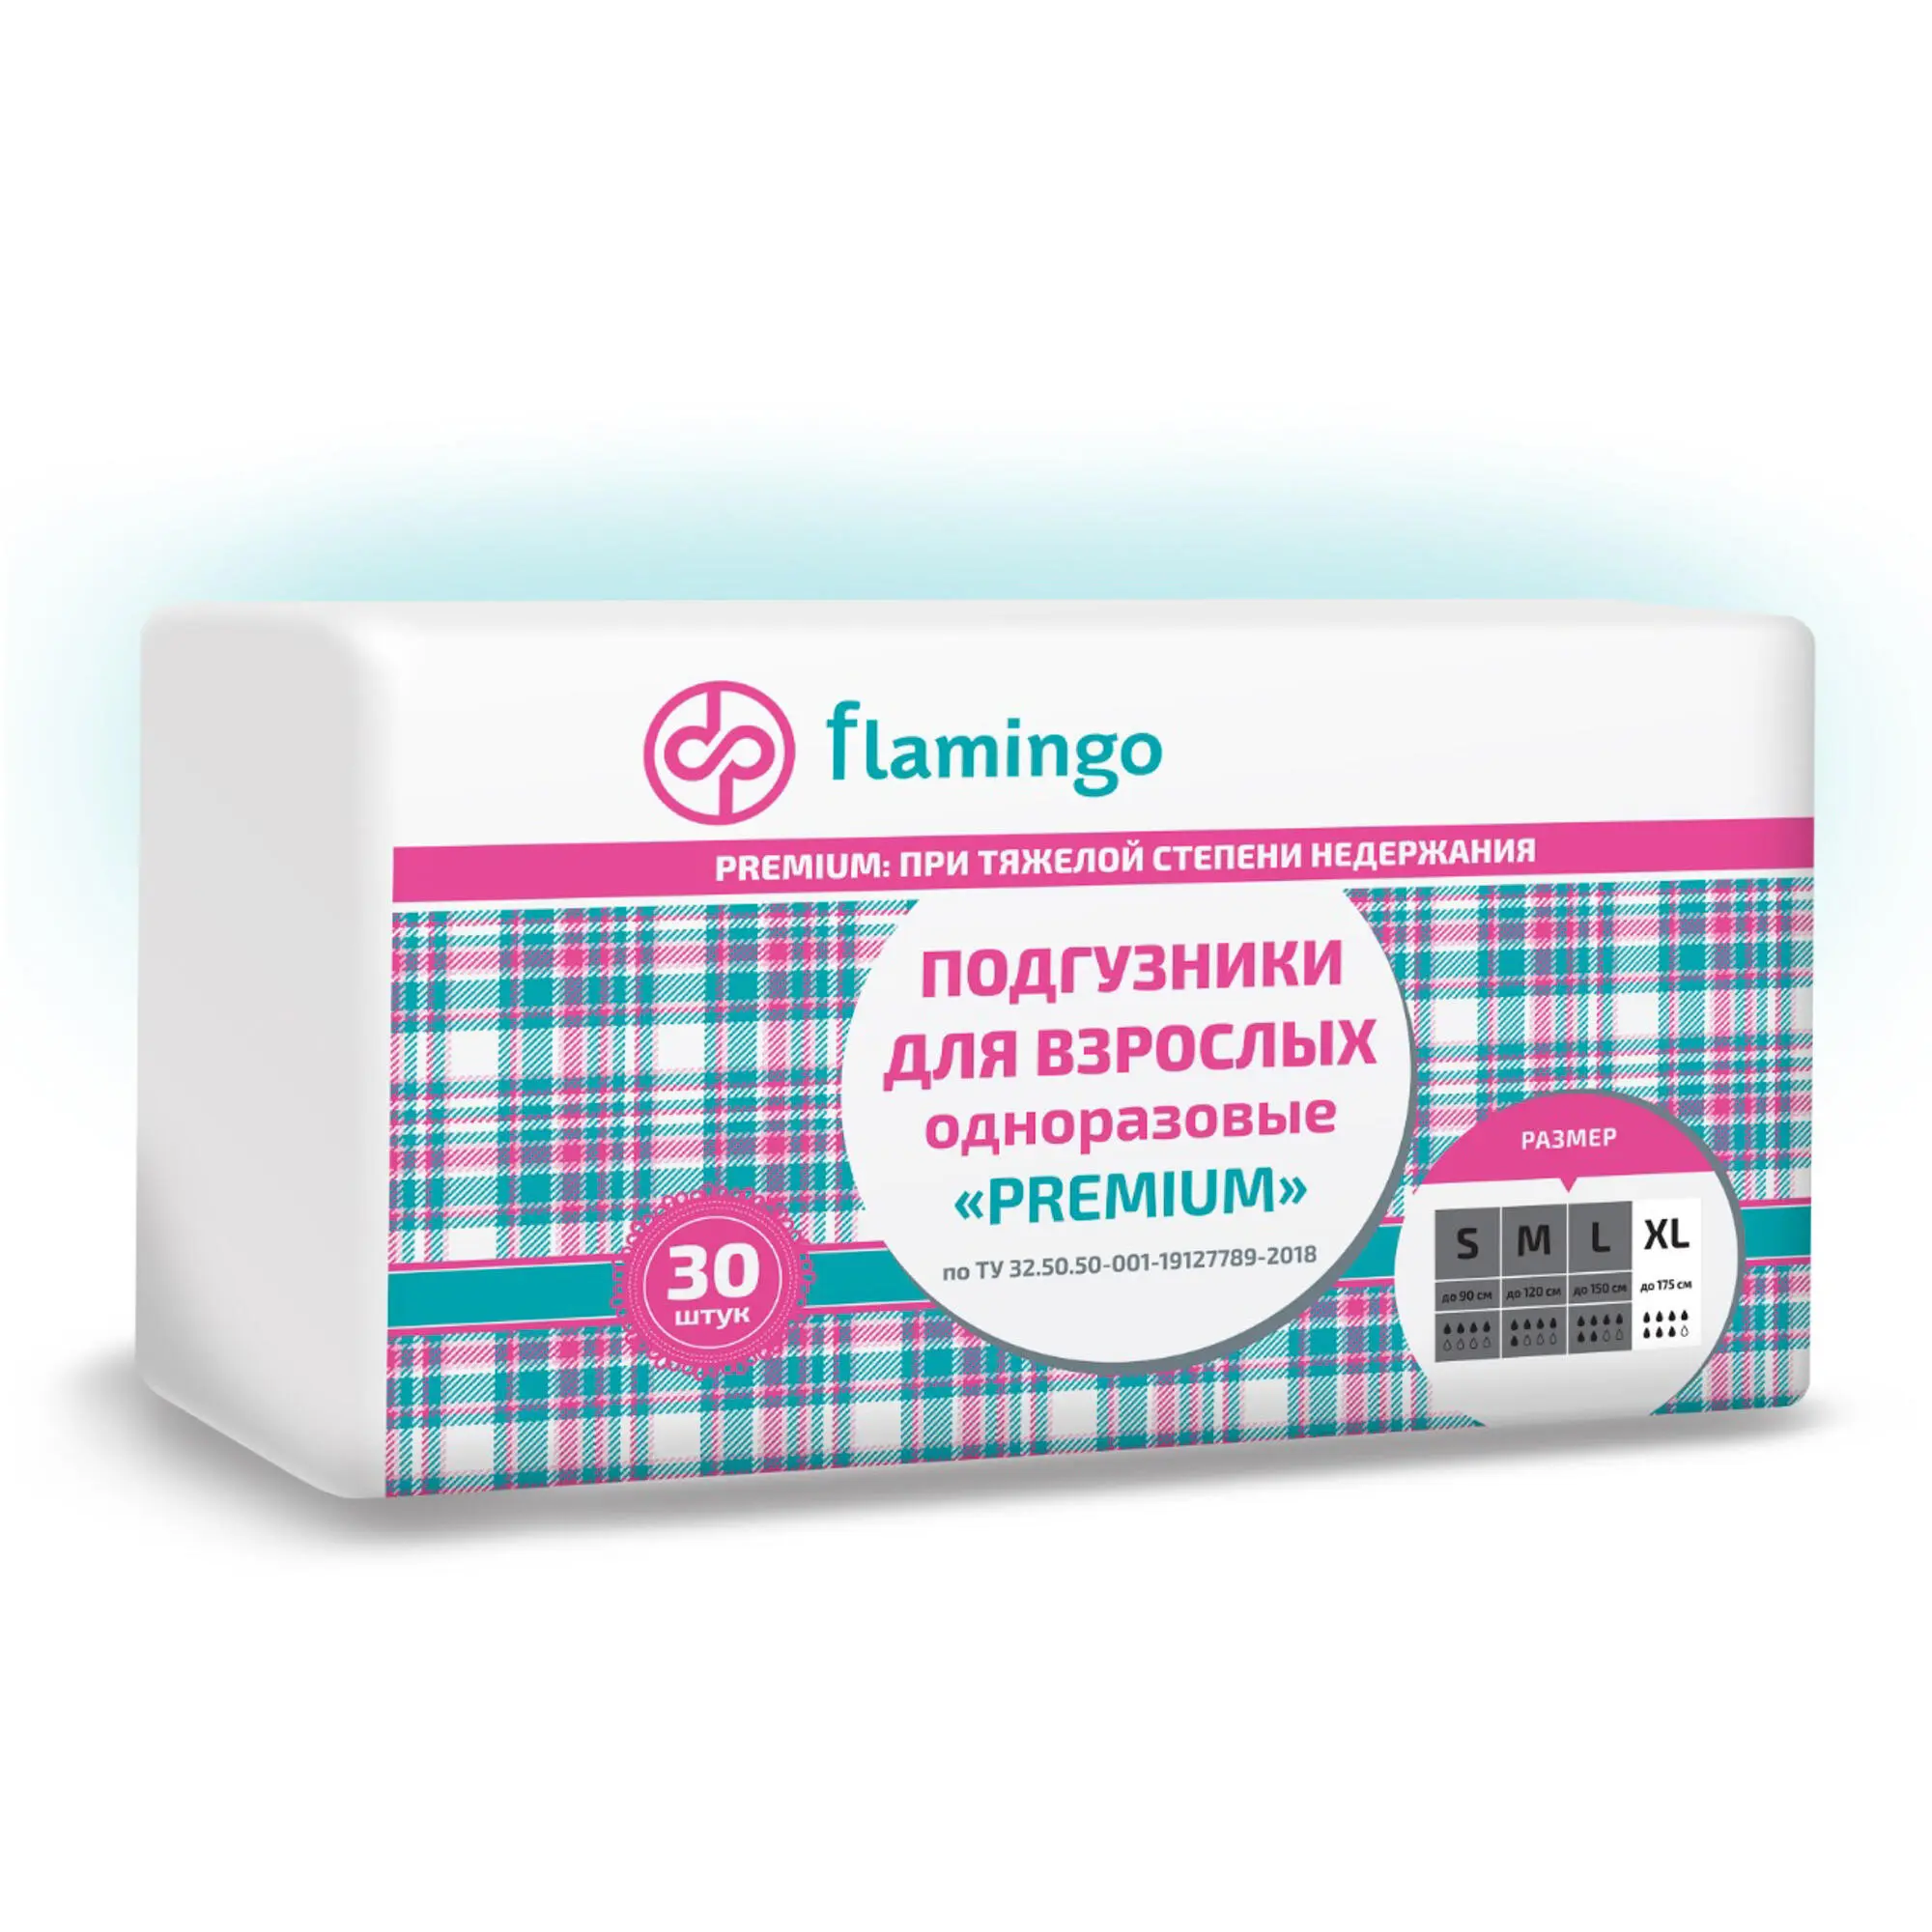 Подгузники для взрослых дышащие Flamingo Premium размер XL, 30 шт